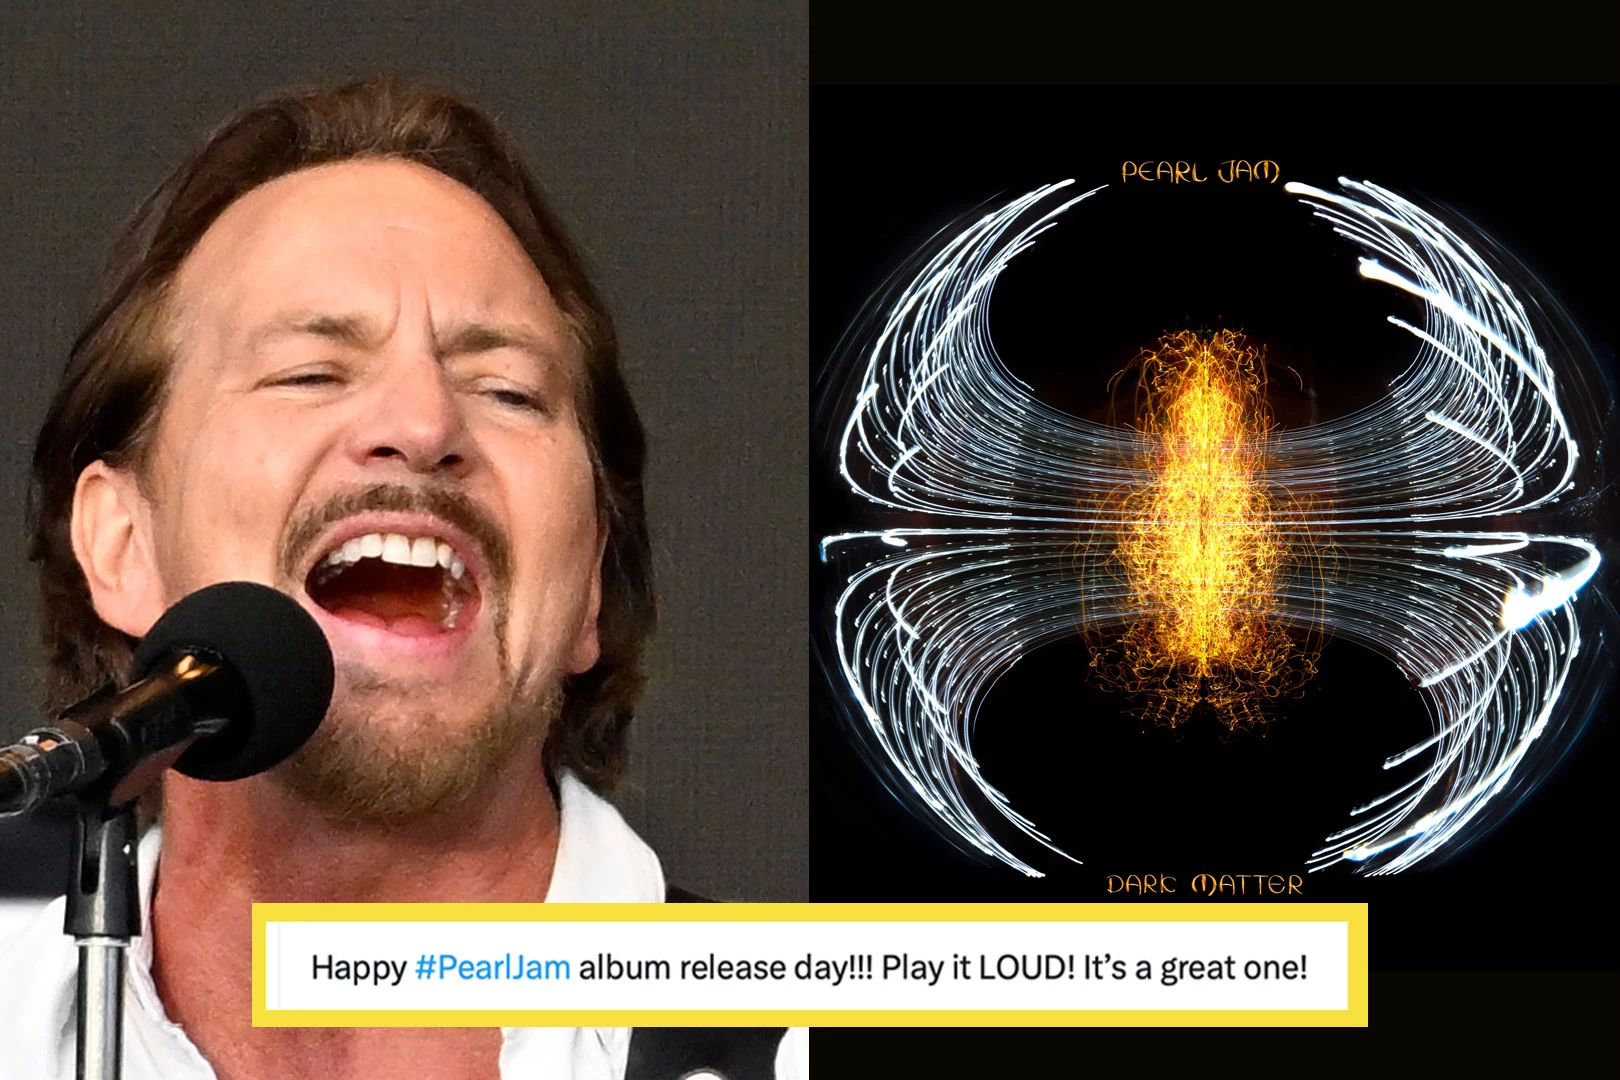 Do Pearl Jam Fans Like the New Album ‘Dark Matter’? See Reactions